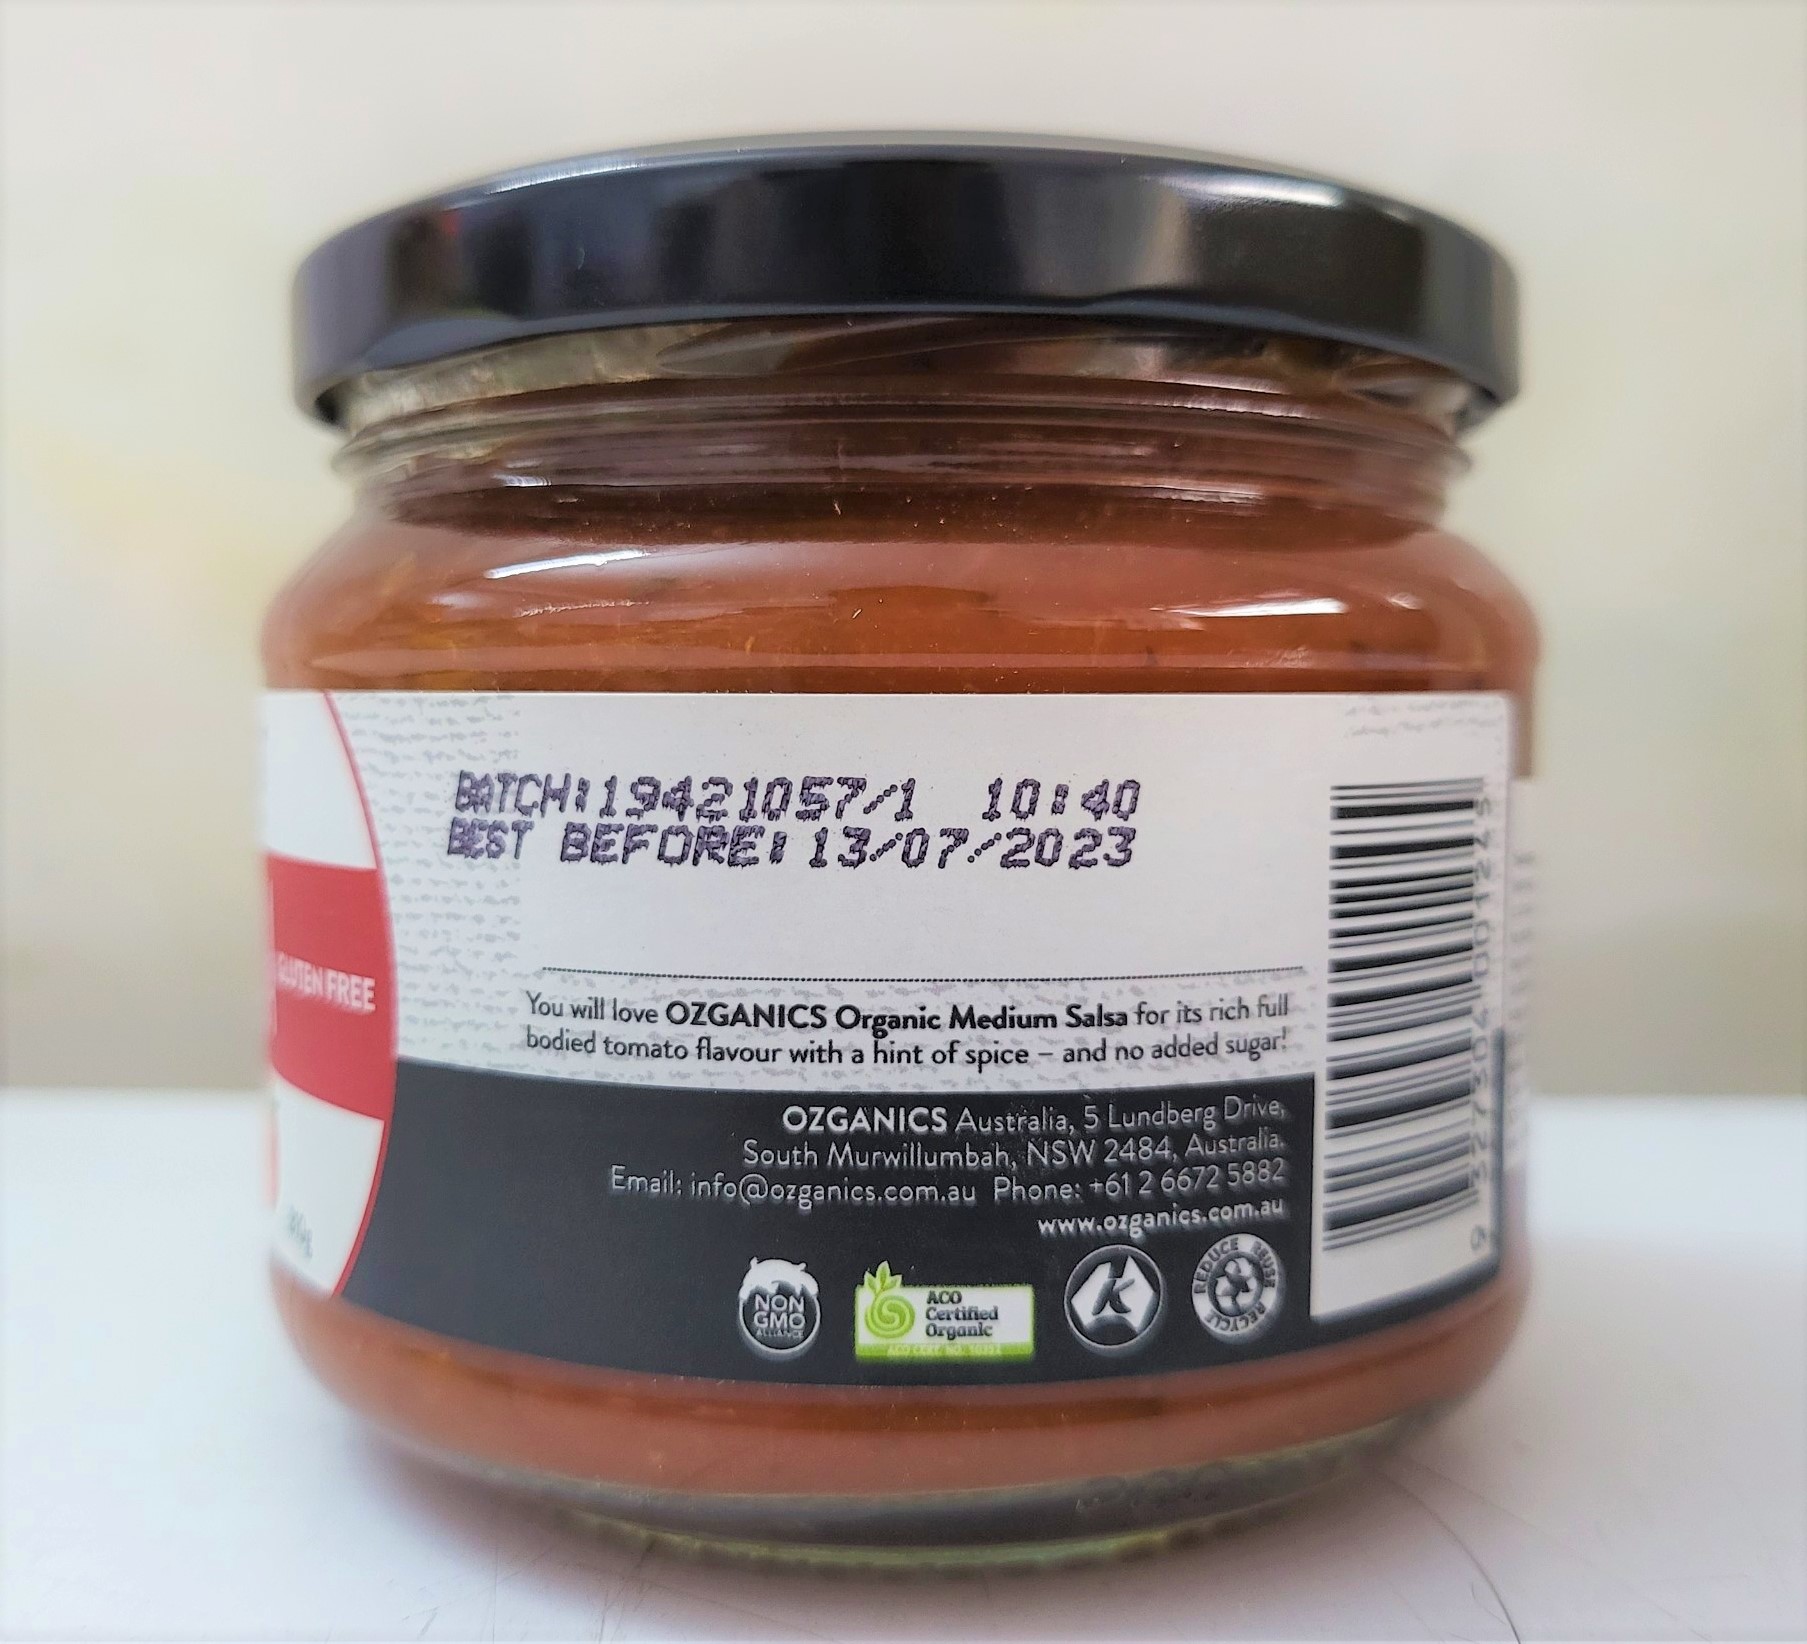 310g - medium organic xốt salsa hữu cơ cay vừa australia ozganics salsa - ảnh sản phẩm 5